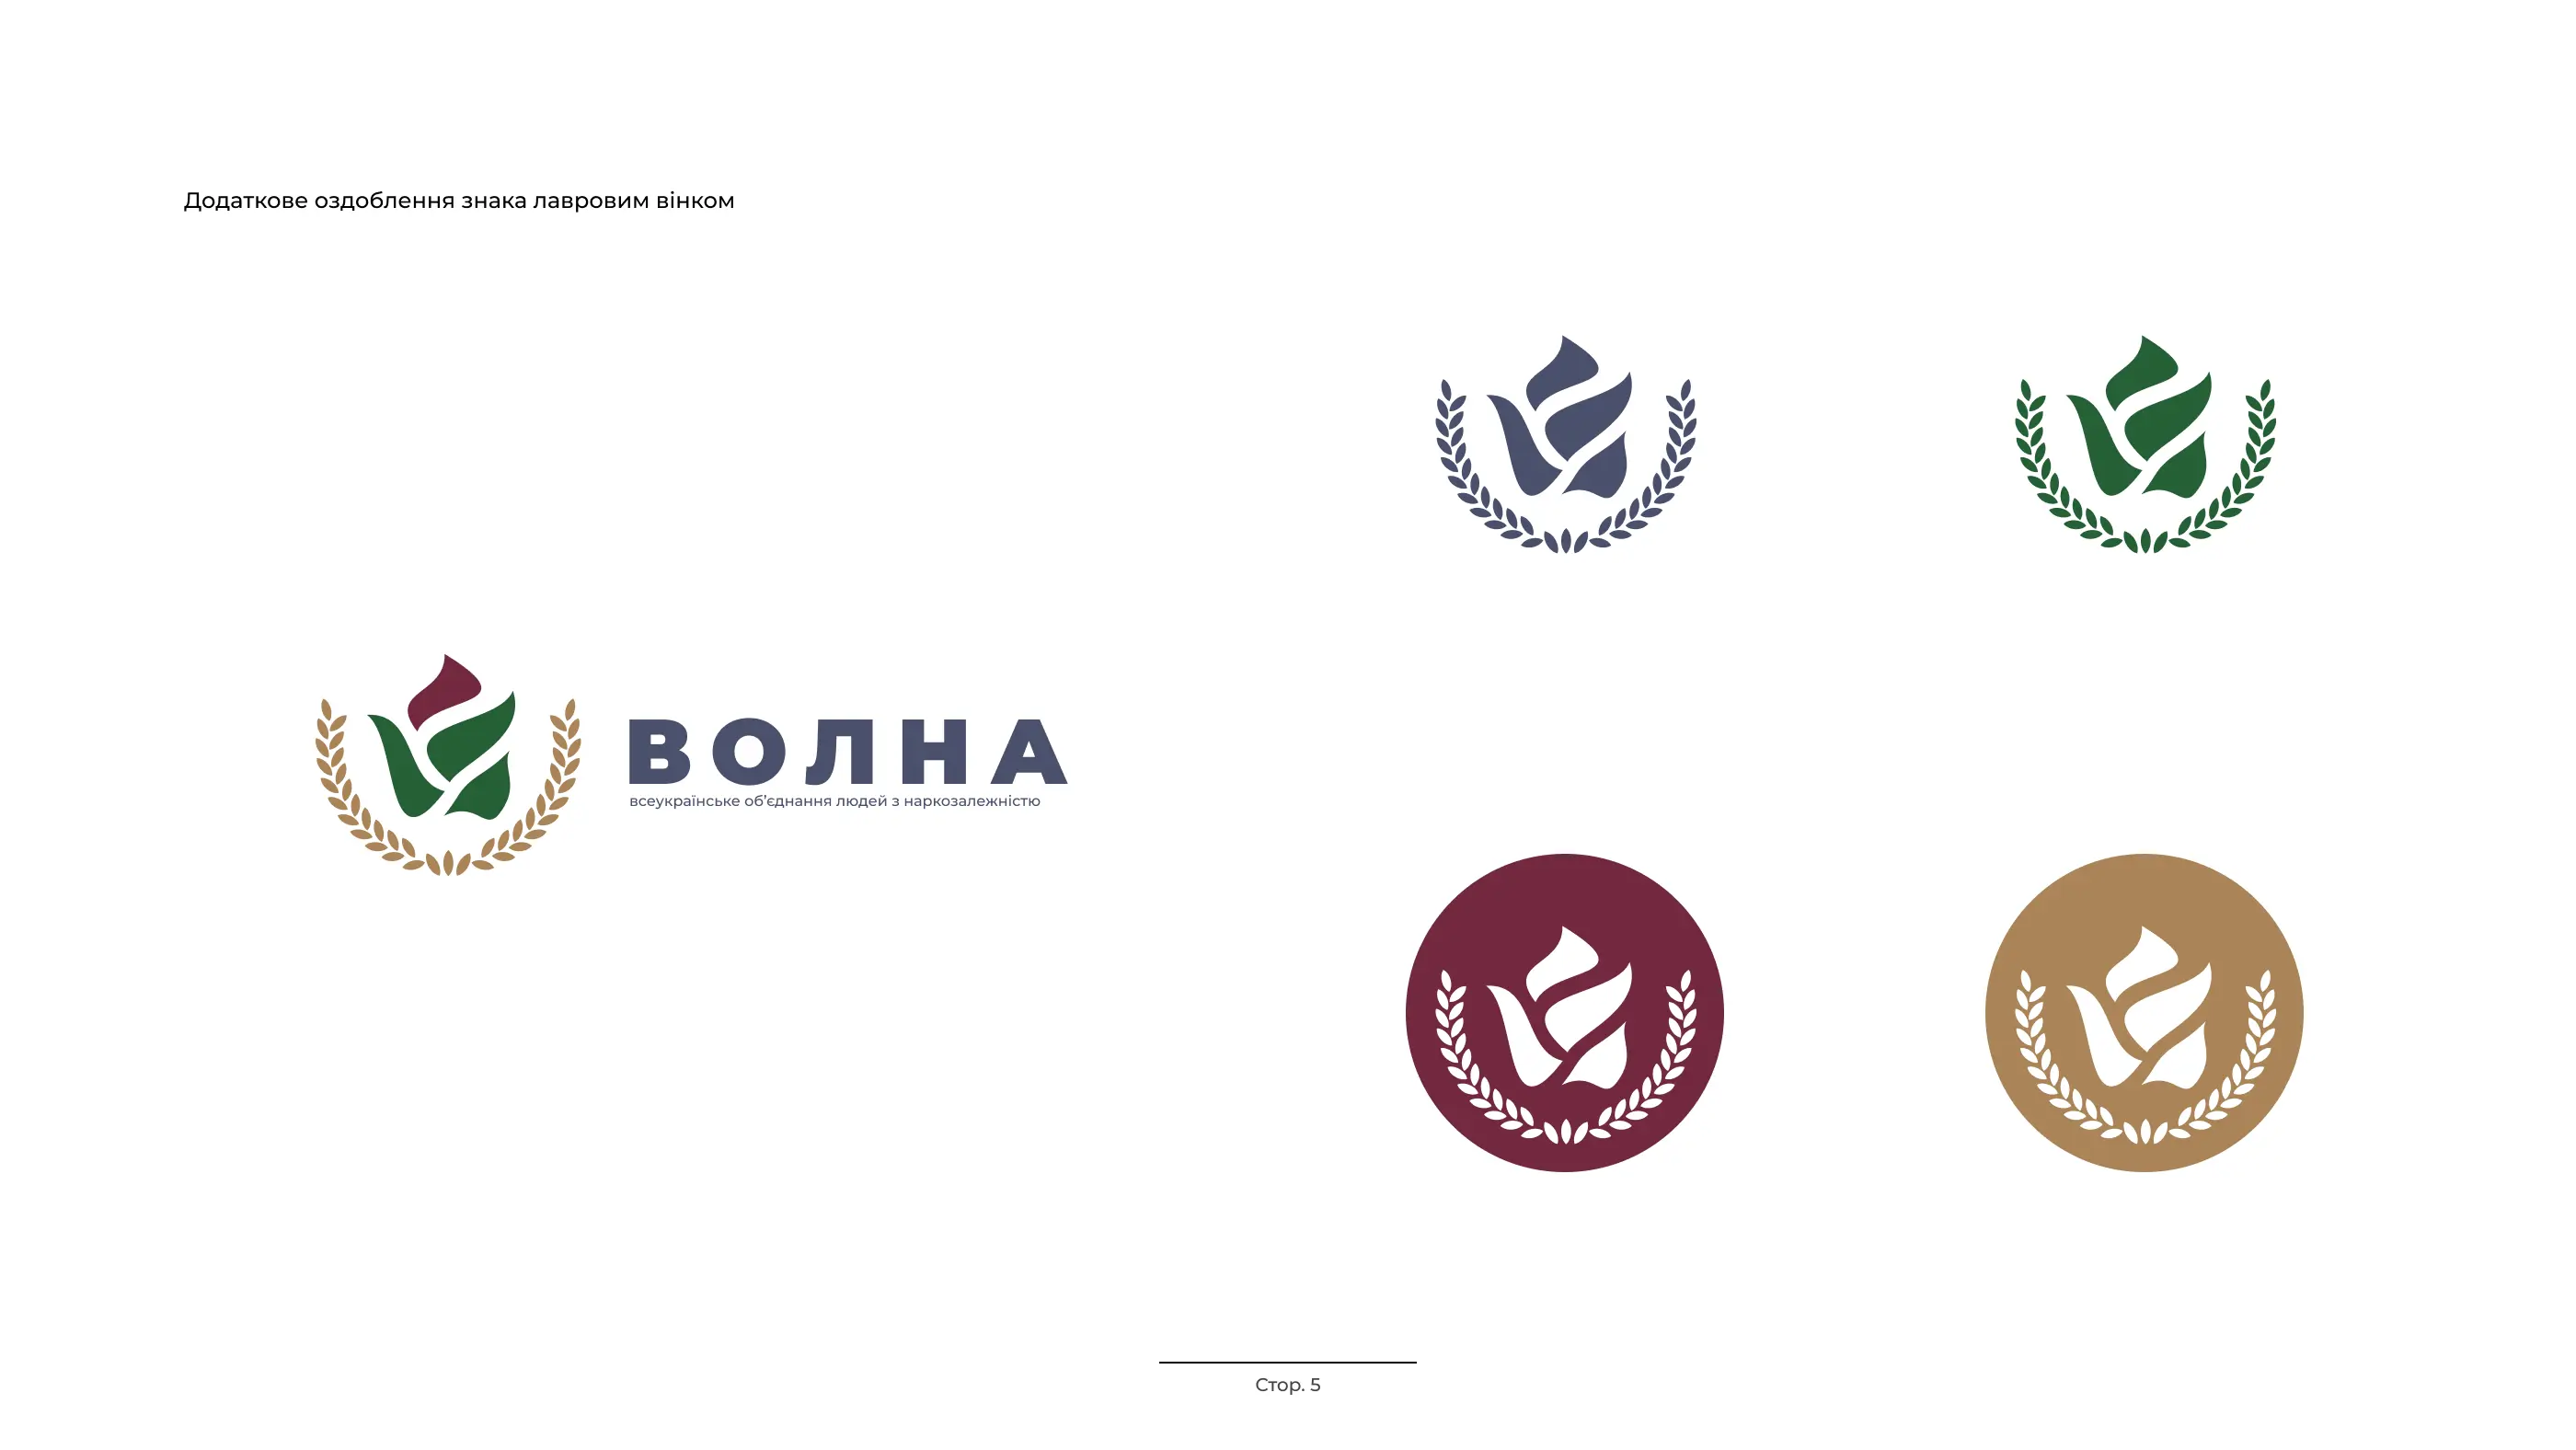 Дизайн, іллюстрації та концепт лого «ВОЛНА» — всеукраїнського об’єднання людей з наркозалежністю